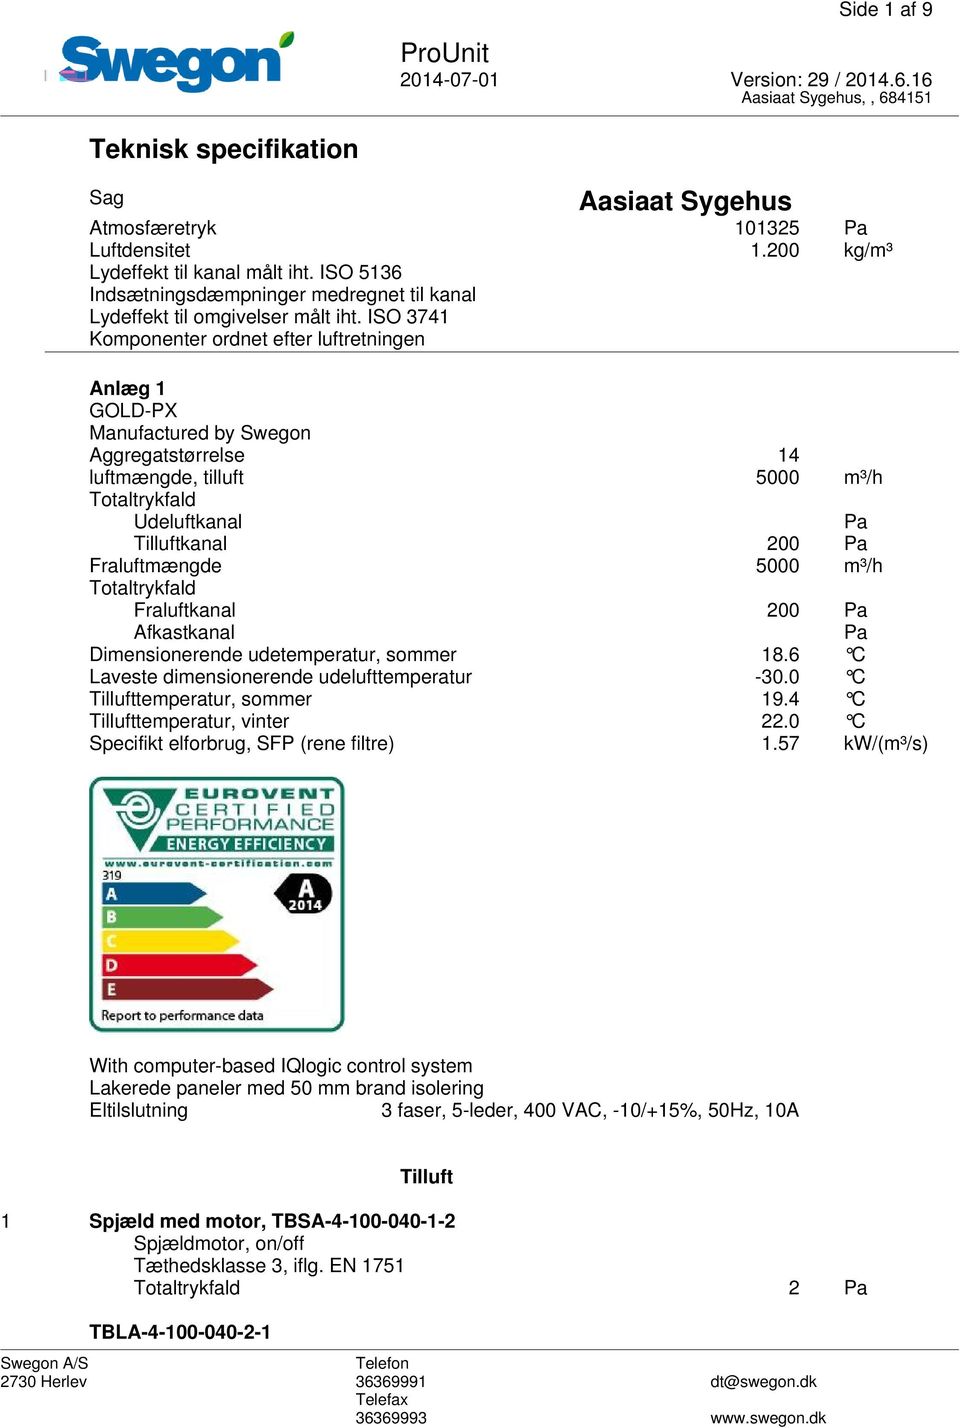 ISO 3741 Komponenter ordnet efter luftretningen Anlæg 1 GOLD-PX Manufactured by Swegon Aggregatstørrelse 14 luftmængde, tilluft 5000 m³/h Totaltrykfald Udeluftkanal Pa Tilluftkanal 200 Pa